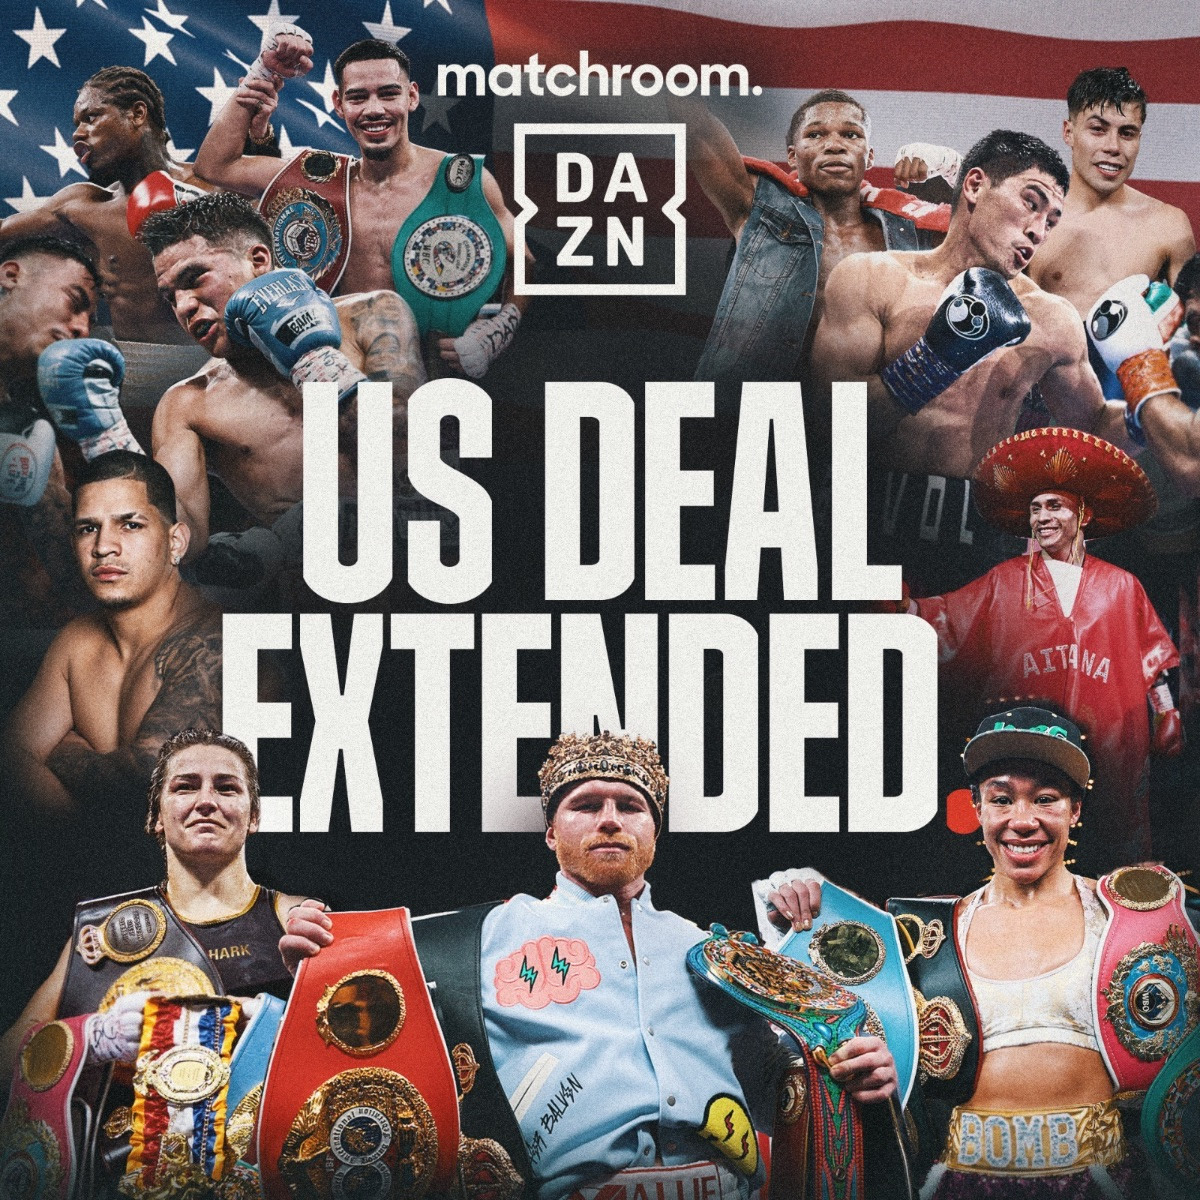 Dazn amplía tres años más su contrato con Matchroom para los combates en EE.UU. y México